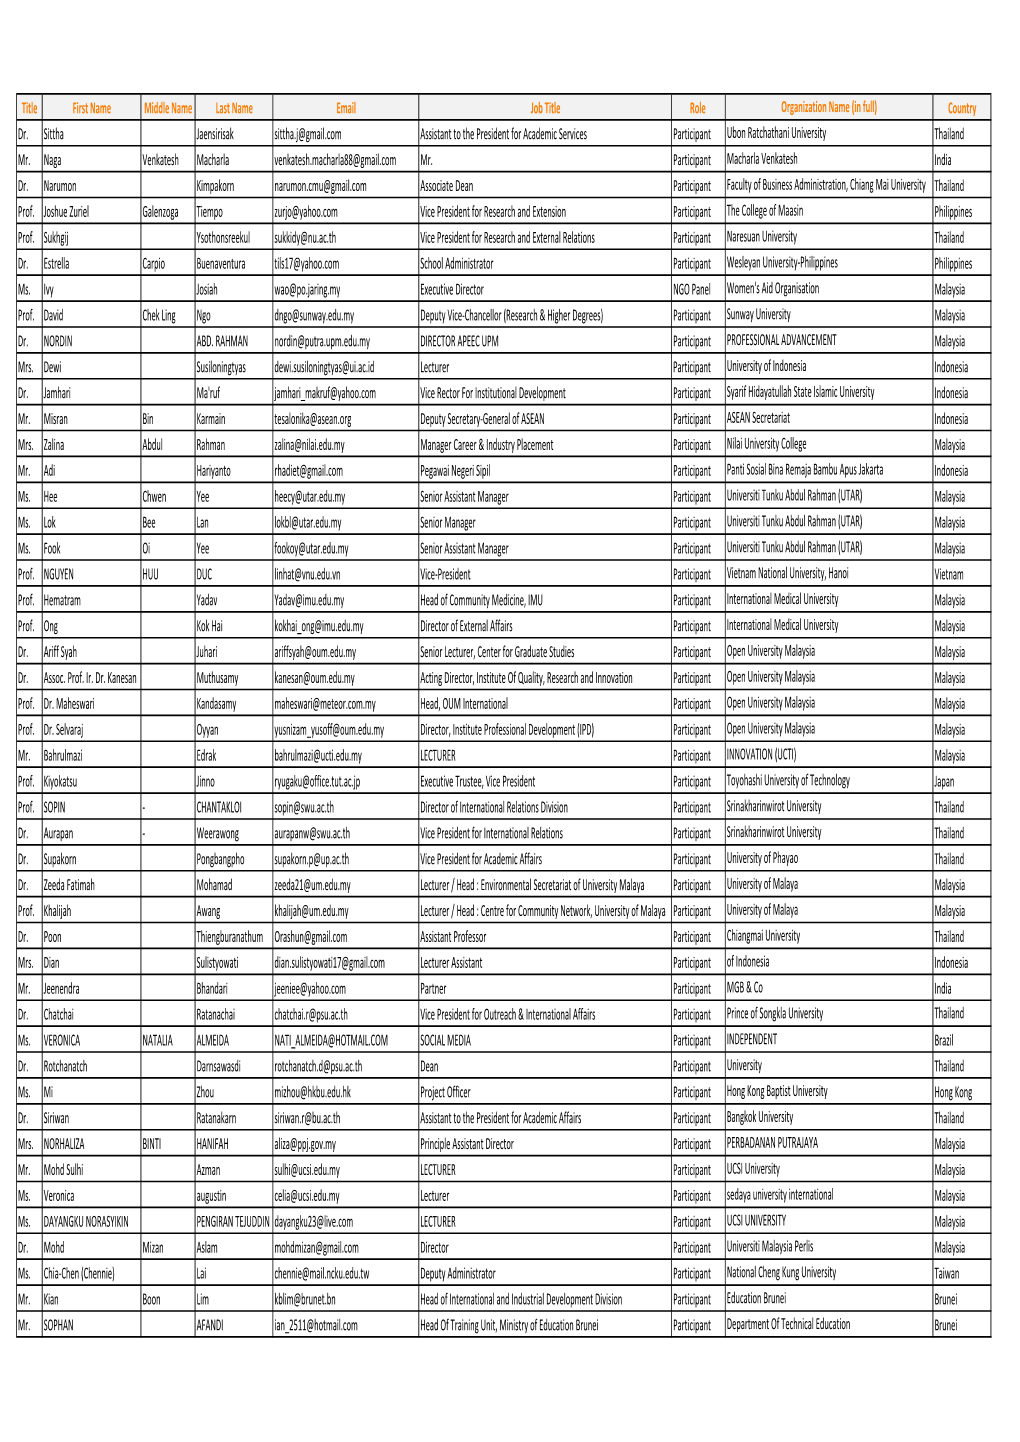 Attendance List As of 1 June 2012.Xlsx